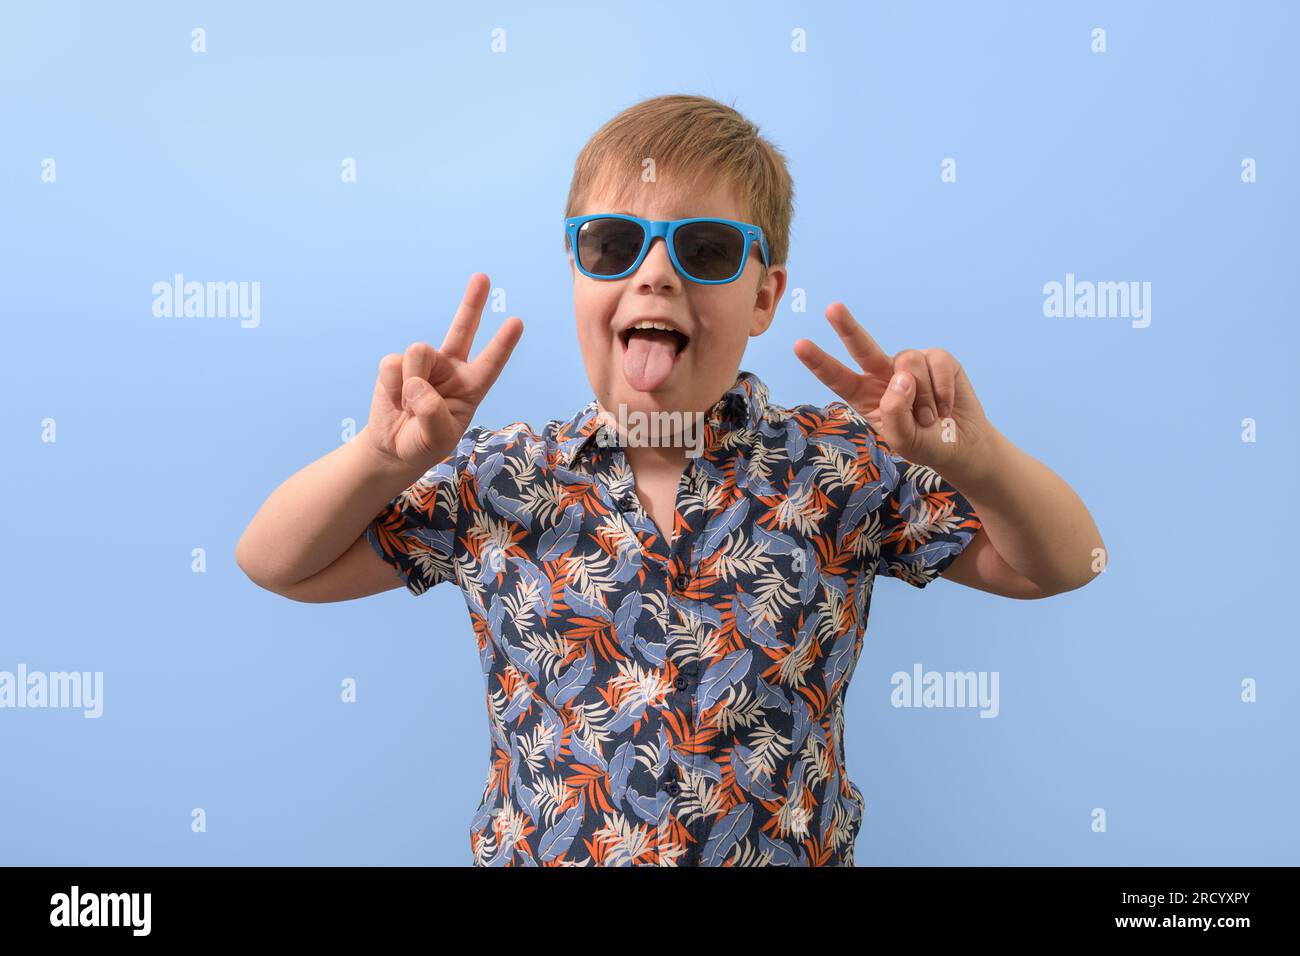 Portrait d'un adolescent dans une chemise hawaïenne et des lunettes de soleil bleues. Les mains levées se réjouissent en regardant la caméra. Banque D'Images